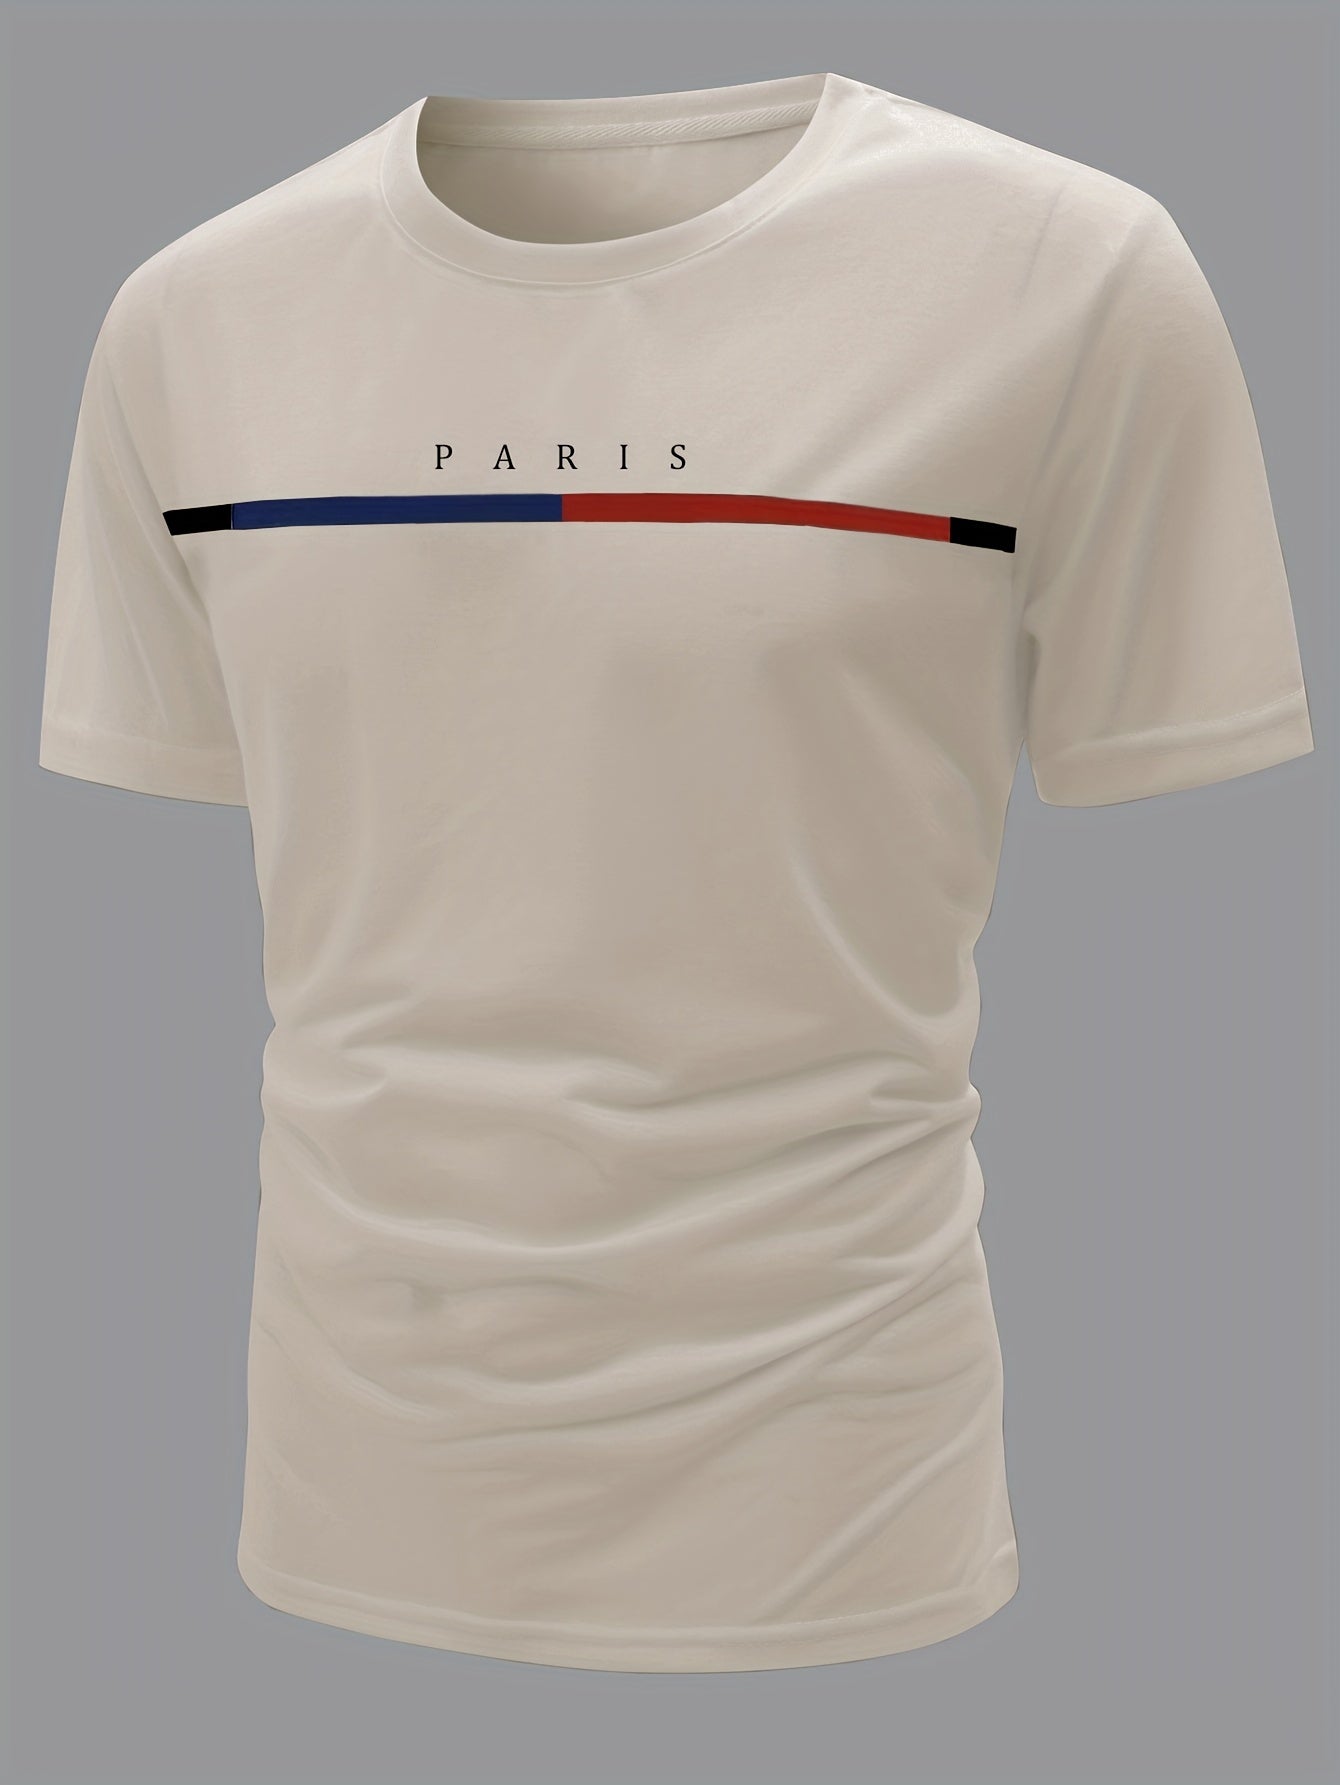 Paris Theme Pattern Print Men's Comfy T-shirt, Graphic Tee Men's Summer Clothes, Men's Outfits